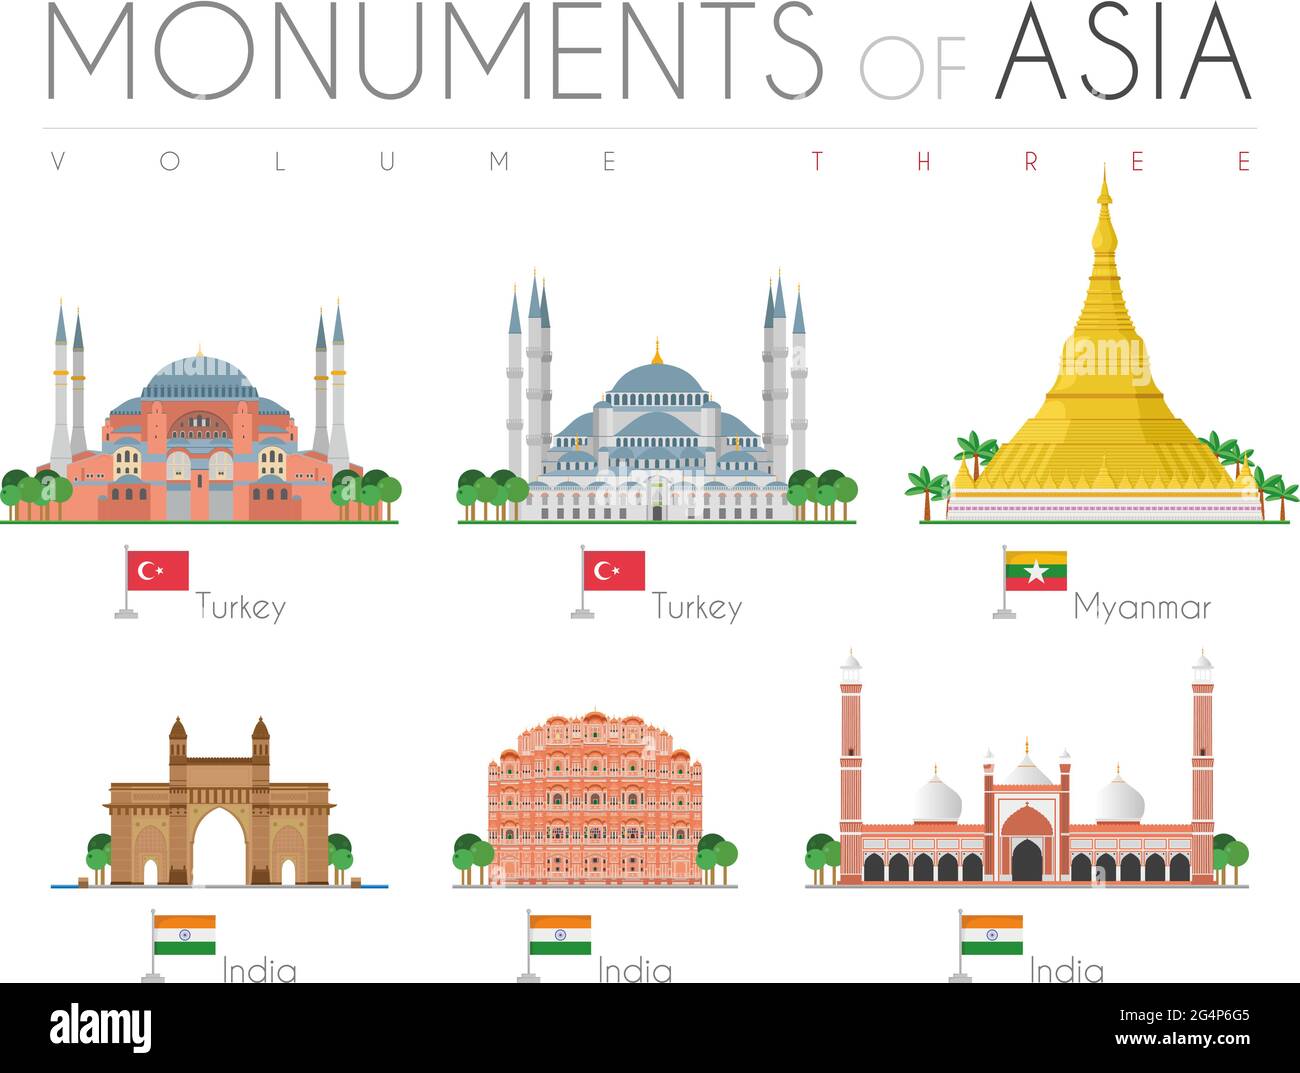 Monumenti dell'Asia in stile cartoon Volume 3: Hagia Sophia e Moschea Blu (Turchia), Shwedagon Pagoda (Myanmar), porta dell'India, Hawa Mahal e Jama Mas Illustrazione Vettoriale